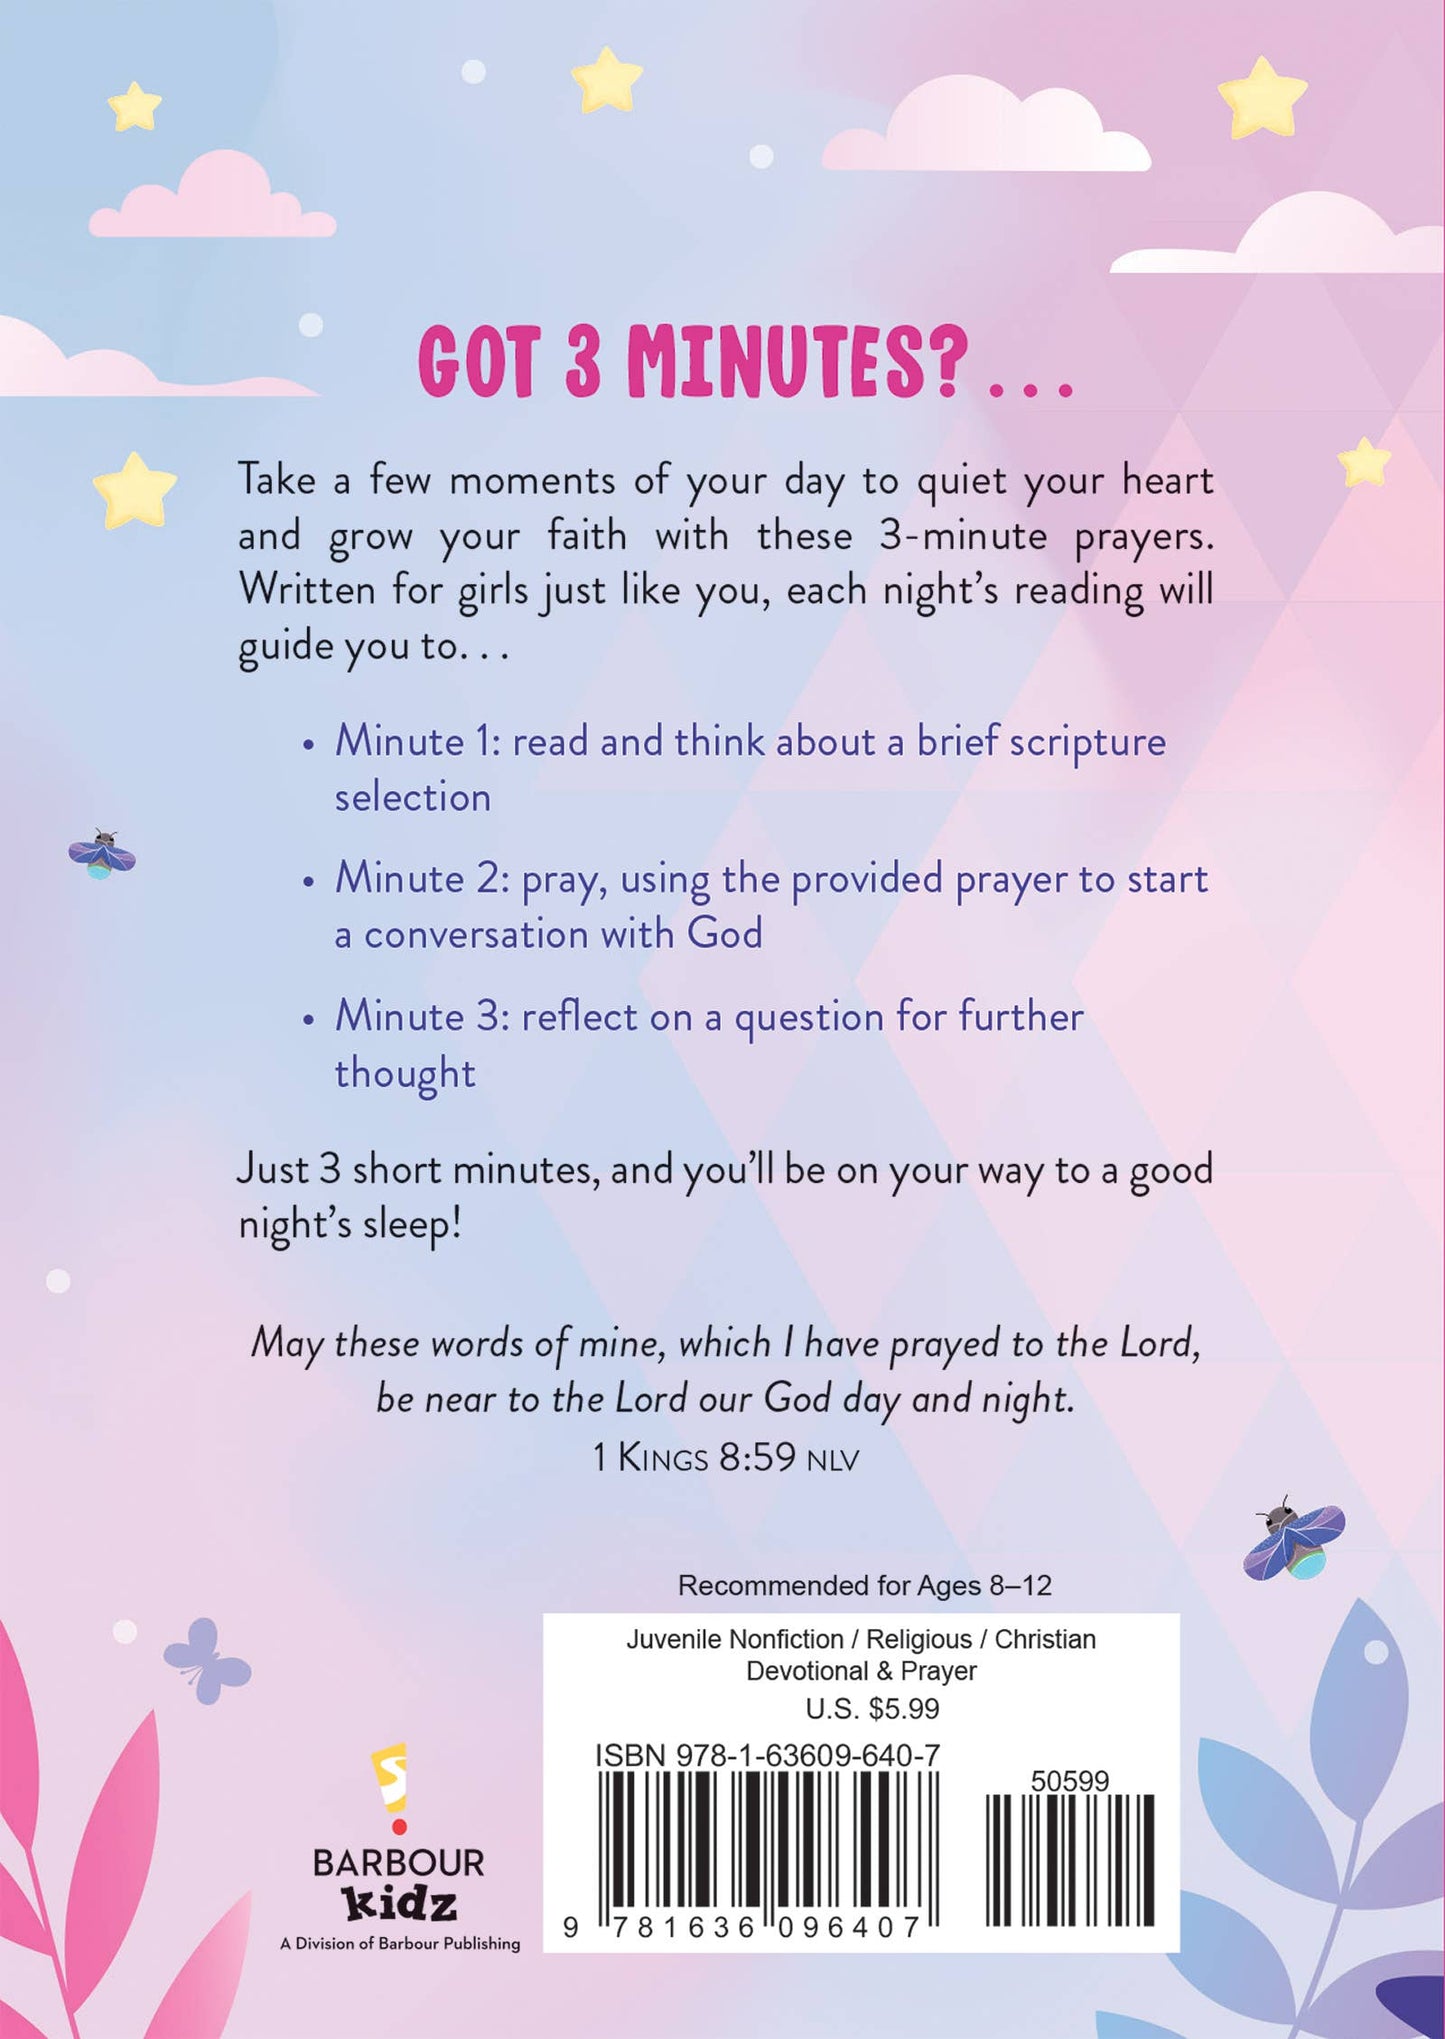 3-Minute Bedtime Prayers for Girls